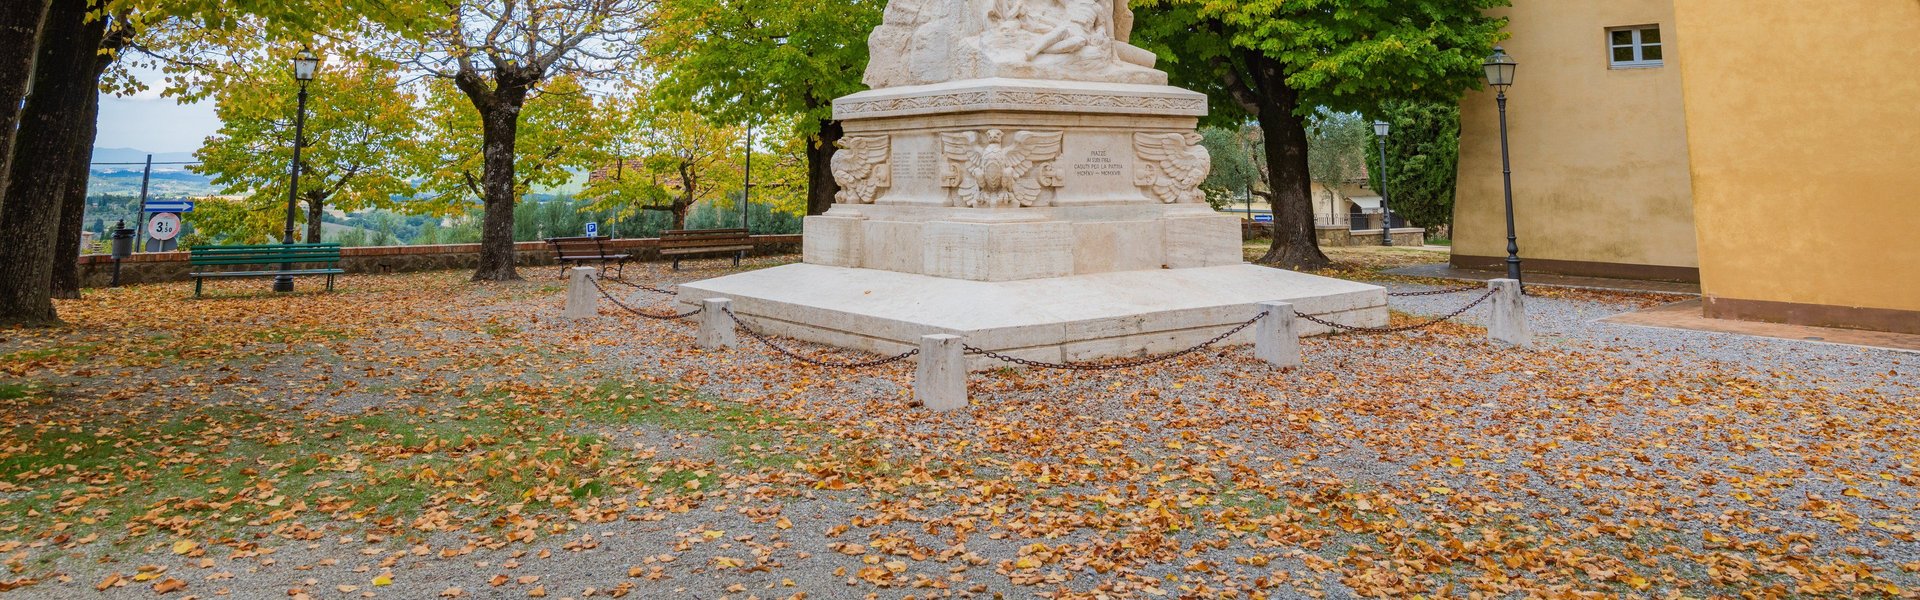 Piazza, statua vista dal basso